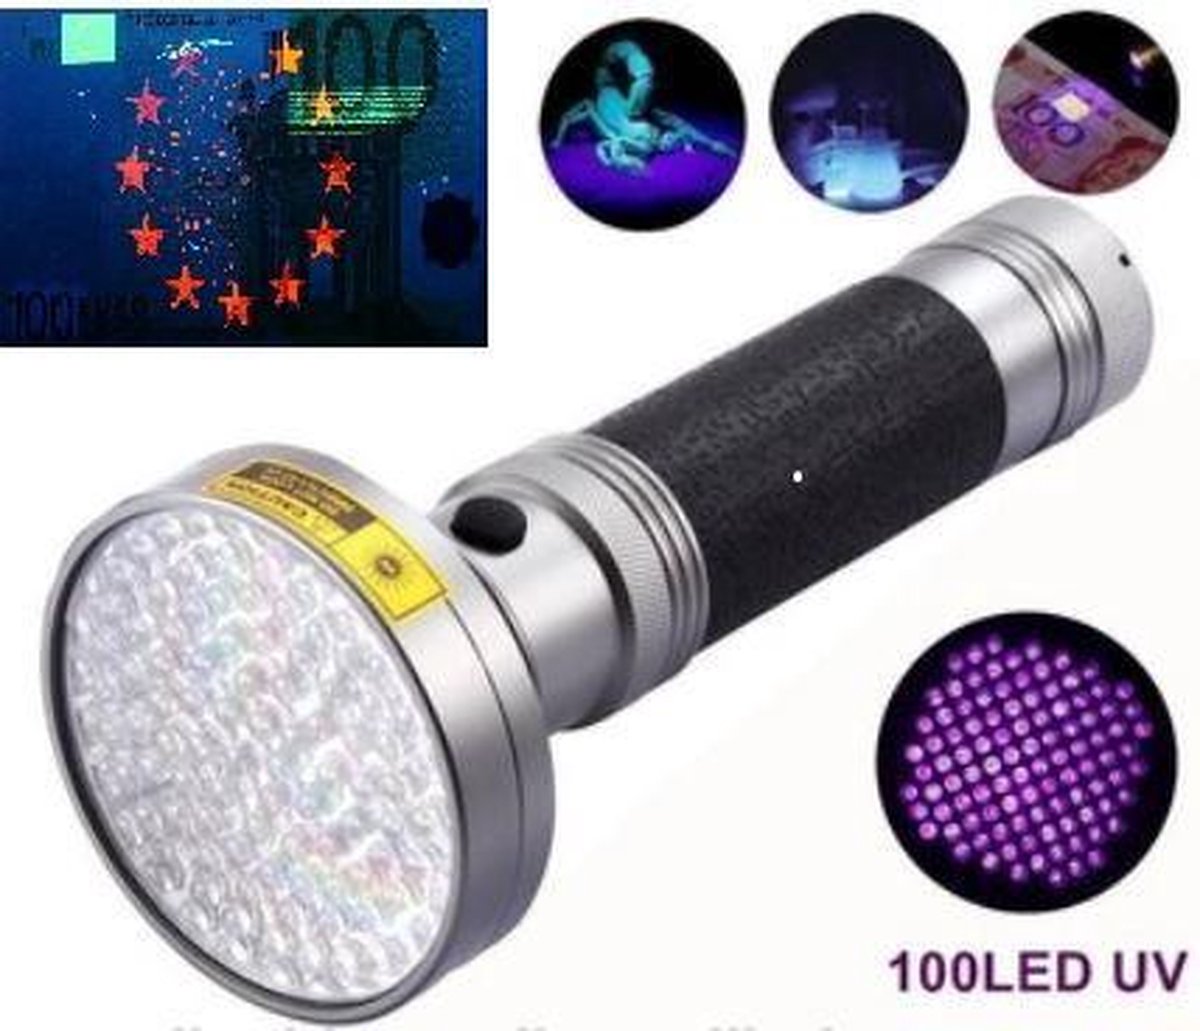 Zeer Krachtige UV Zaklamp 100 Leds 395nm Ultra Violet Licht voor de Opsporing van Urine vlekken door Huisdieren, Geo-caching, en Controle Vals Geld & Namaak